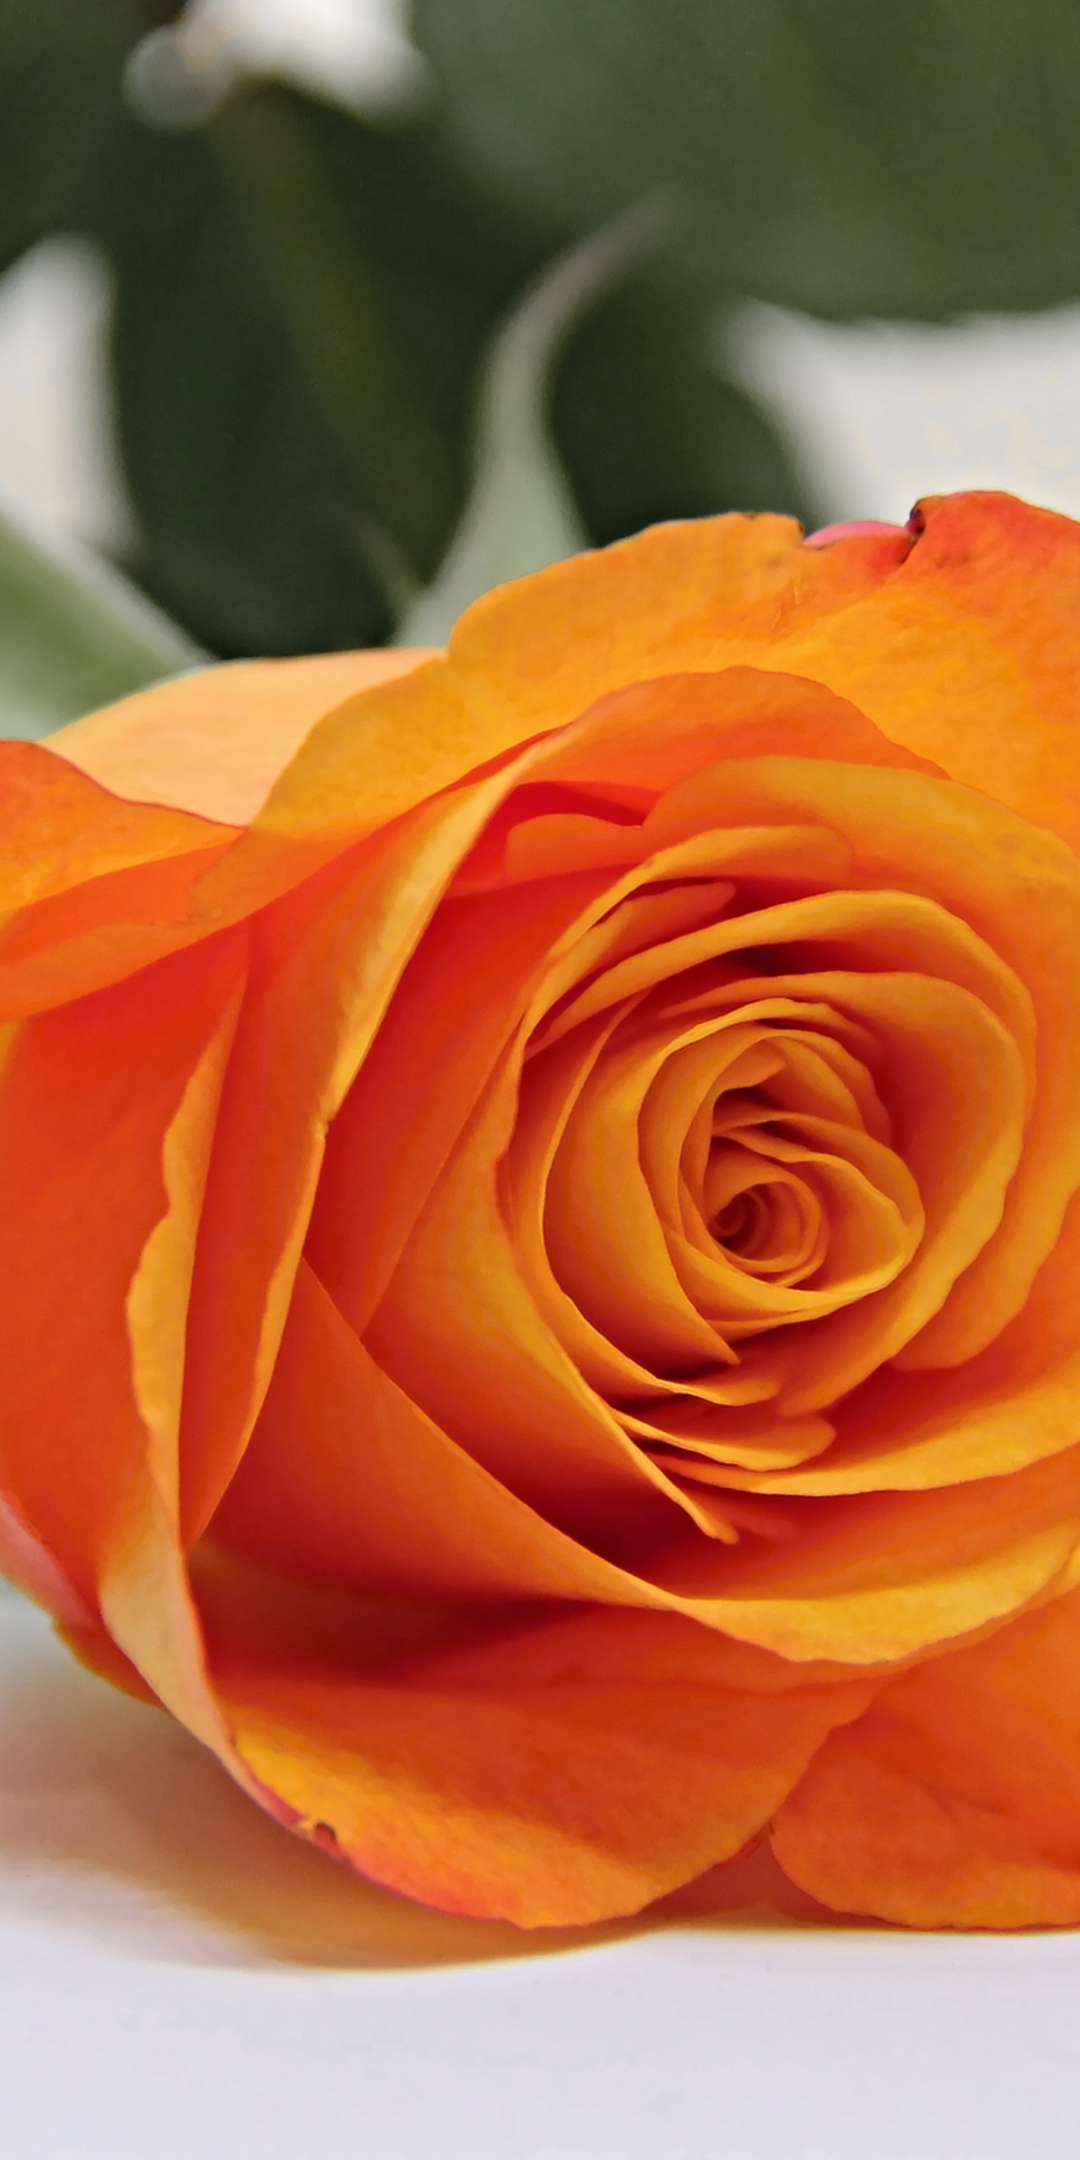 Orange rose, bud, flower, 1080x2160 wallpaper